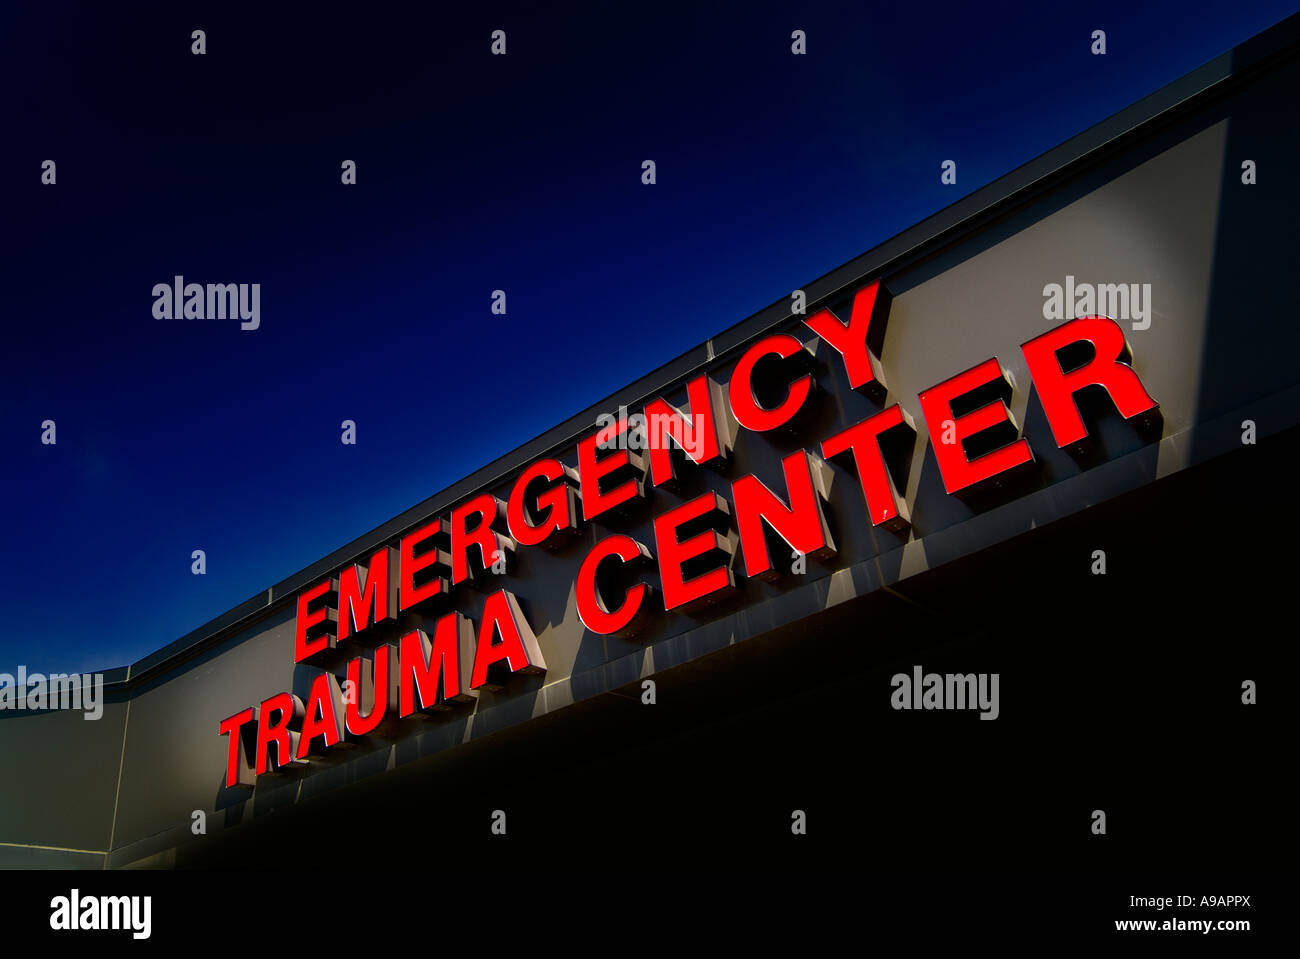 Hospital de Emergencia Trauma Center señal de entrada, Filadelfia, PA, EE.UU. Foto de stock